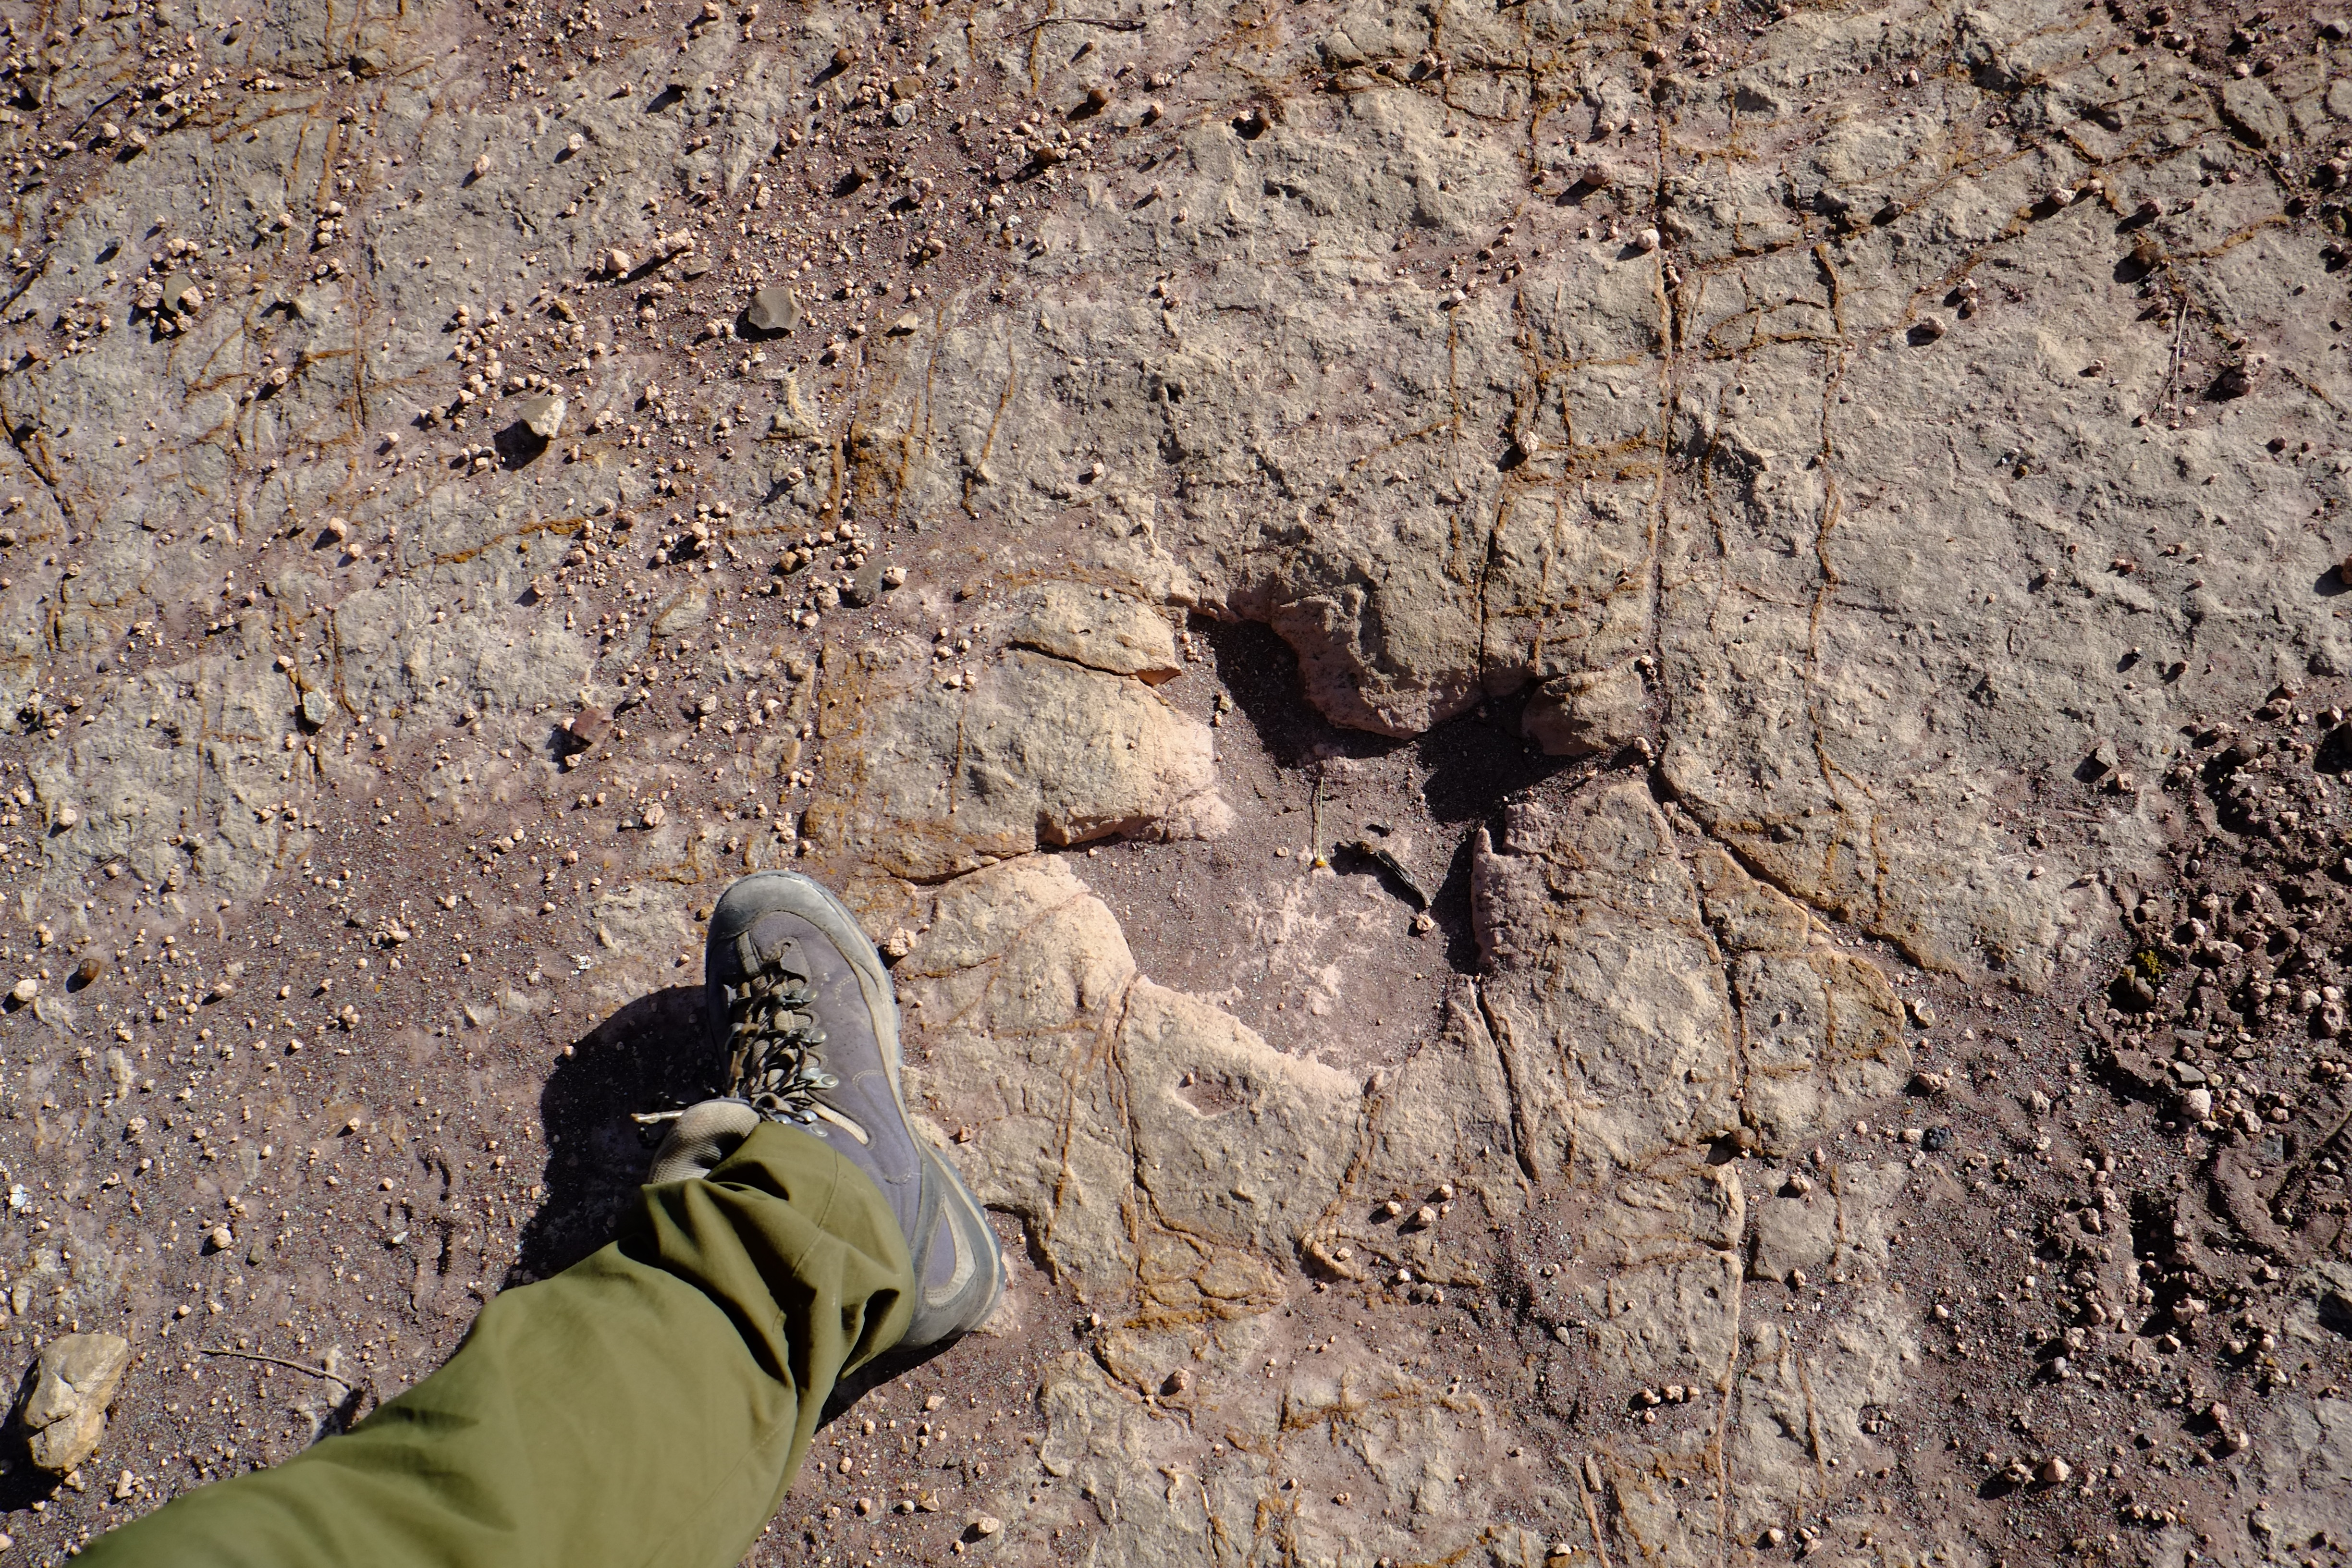 南米ボリビアのトロトロ国立公園へ。恐竜の足跡を見て妄想にふける。足跡は獣脚類、鳥脚類、竜脚類、曲竜類。
ボリビアのグランドキャニオンと呼ばれる渓谷や、鍾乳洞を探検した。